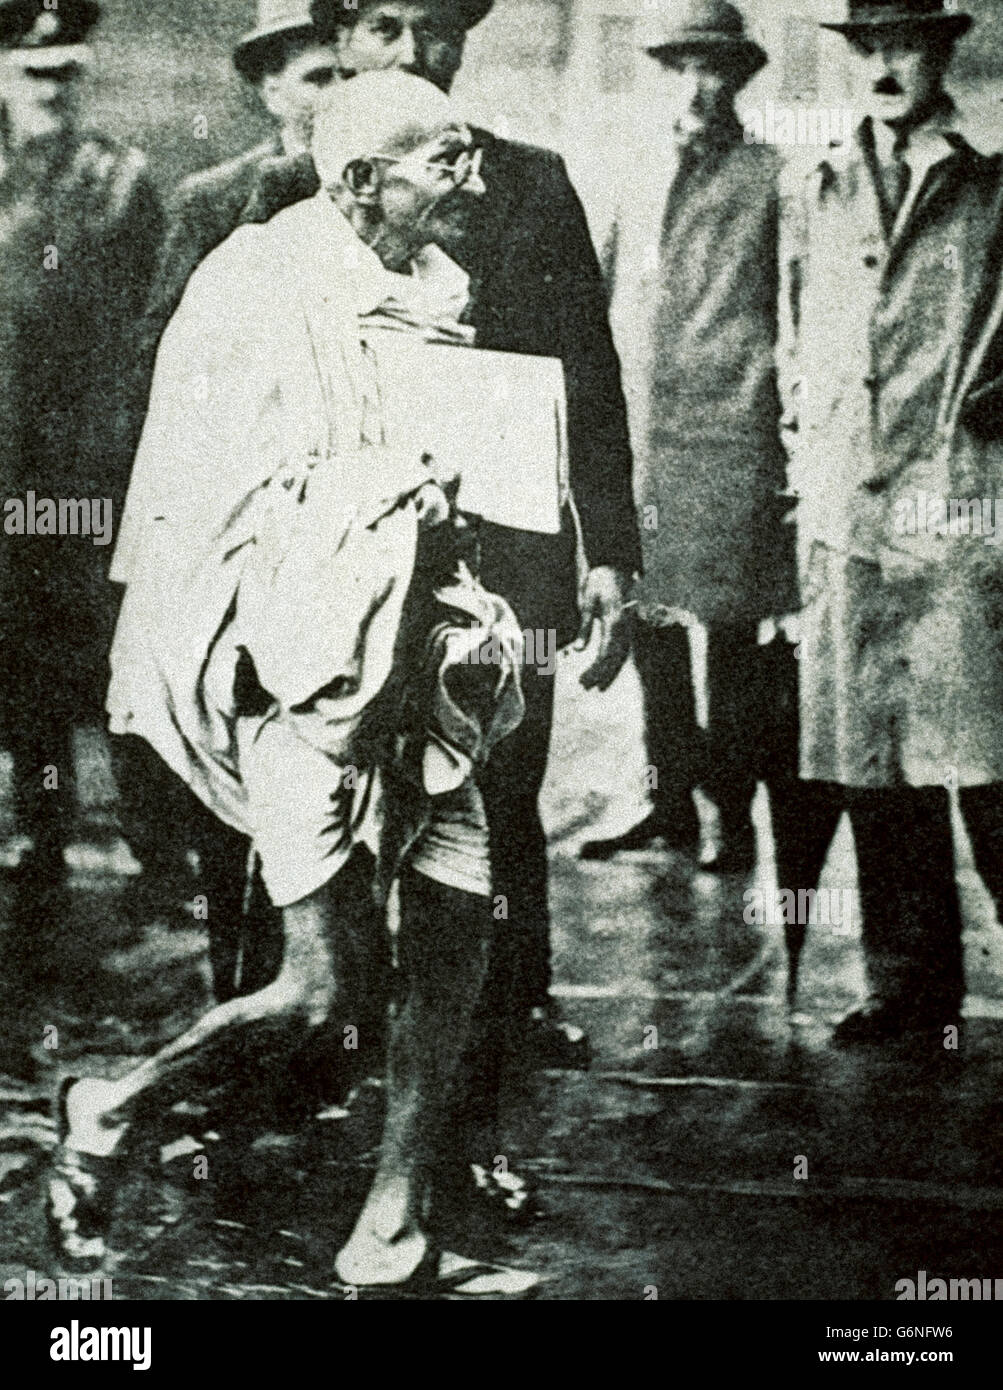 Mohandas Karamchand Gandhi -said the Mahatma (Porbandar, October 2, 1869 - New Delhi, January 30, 1948) - Stock Photo